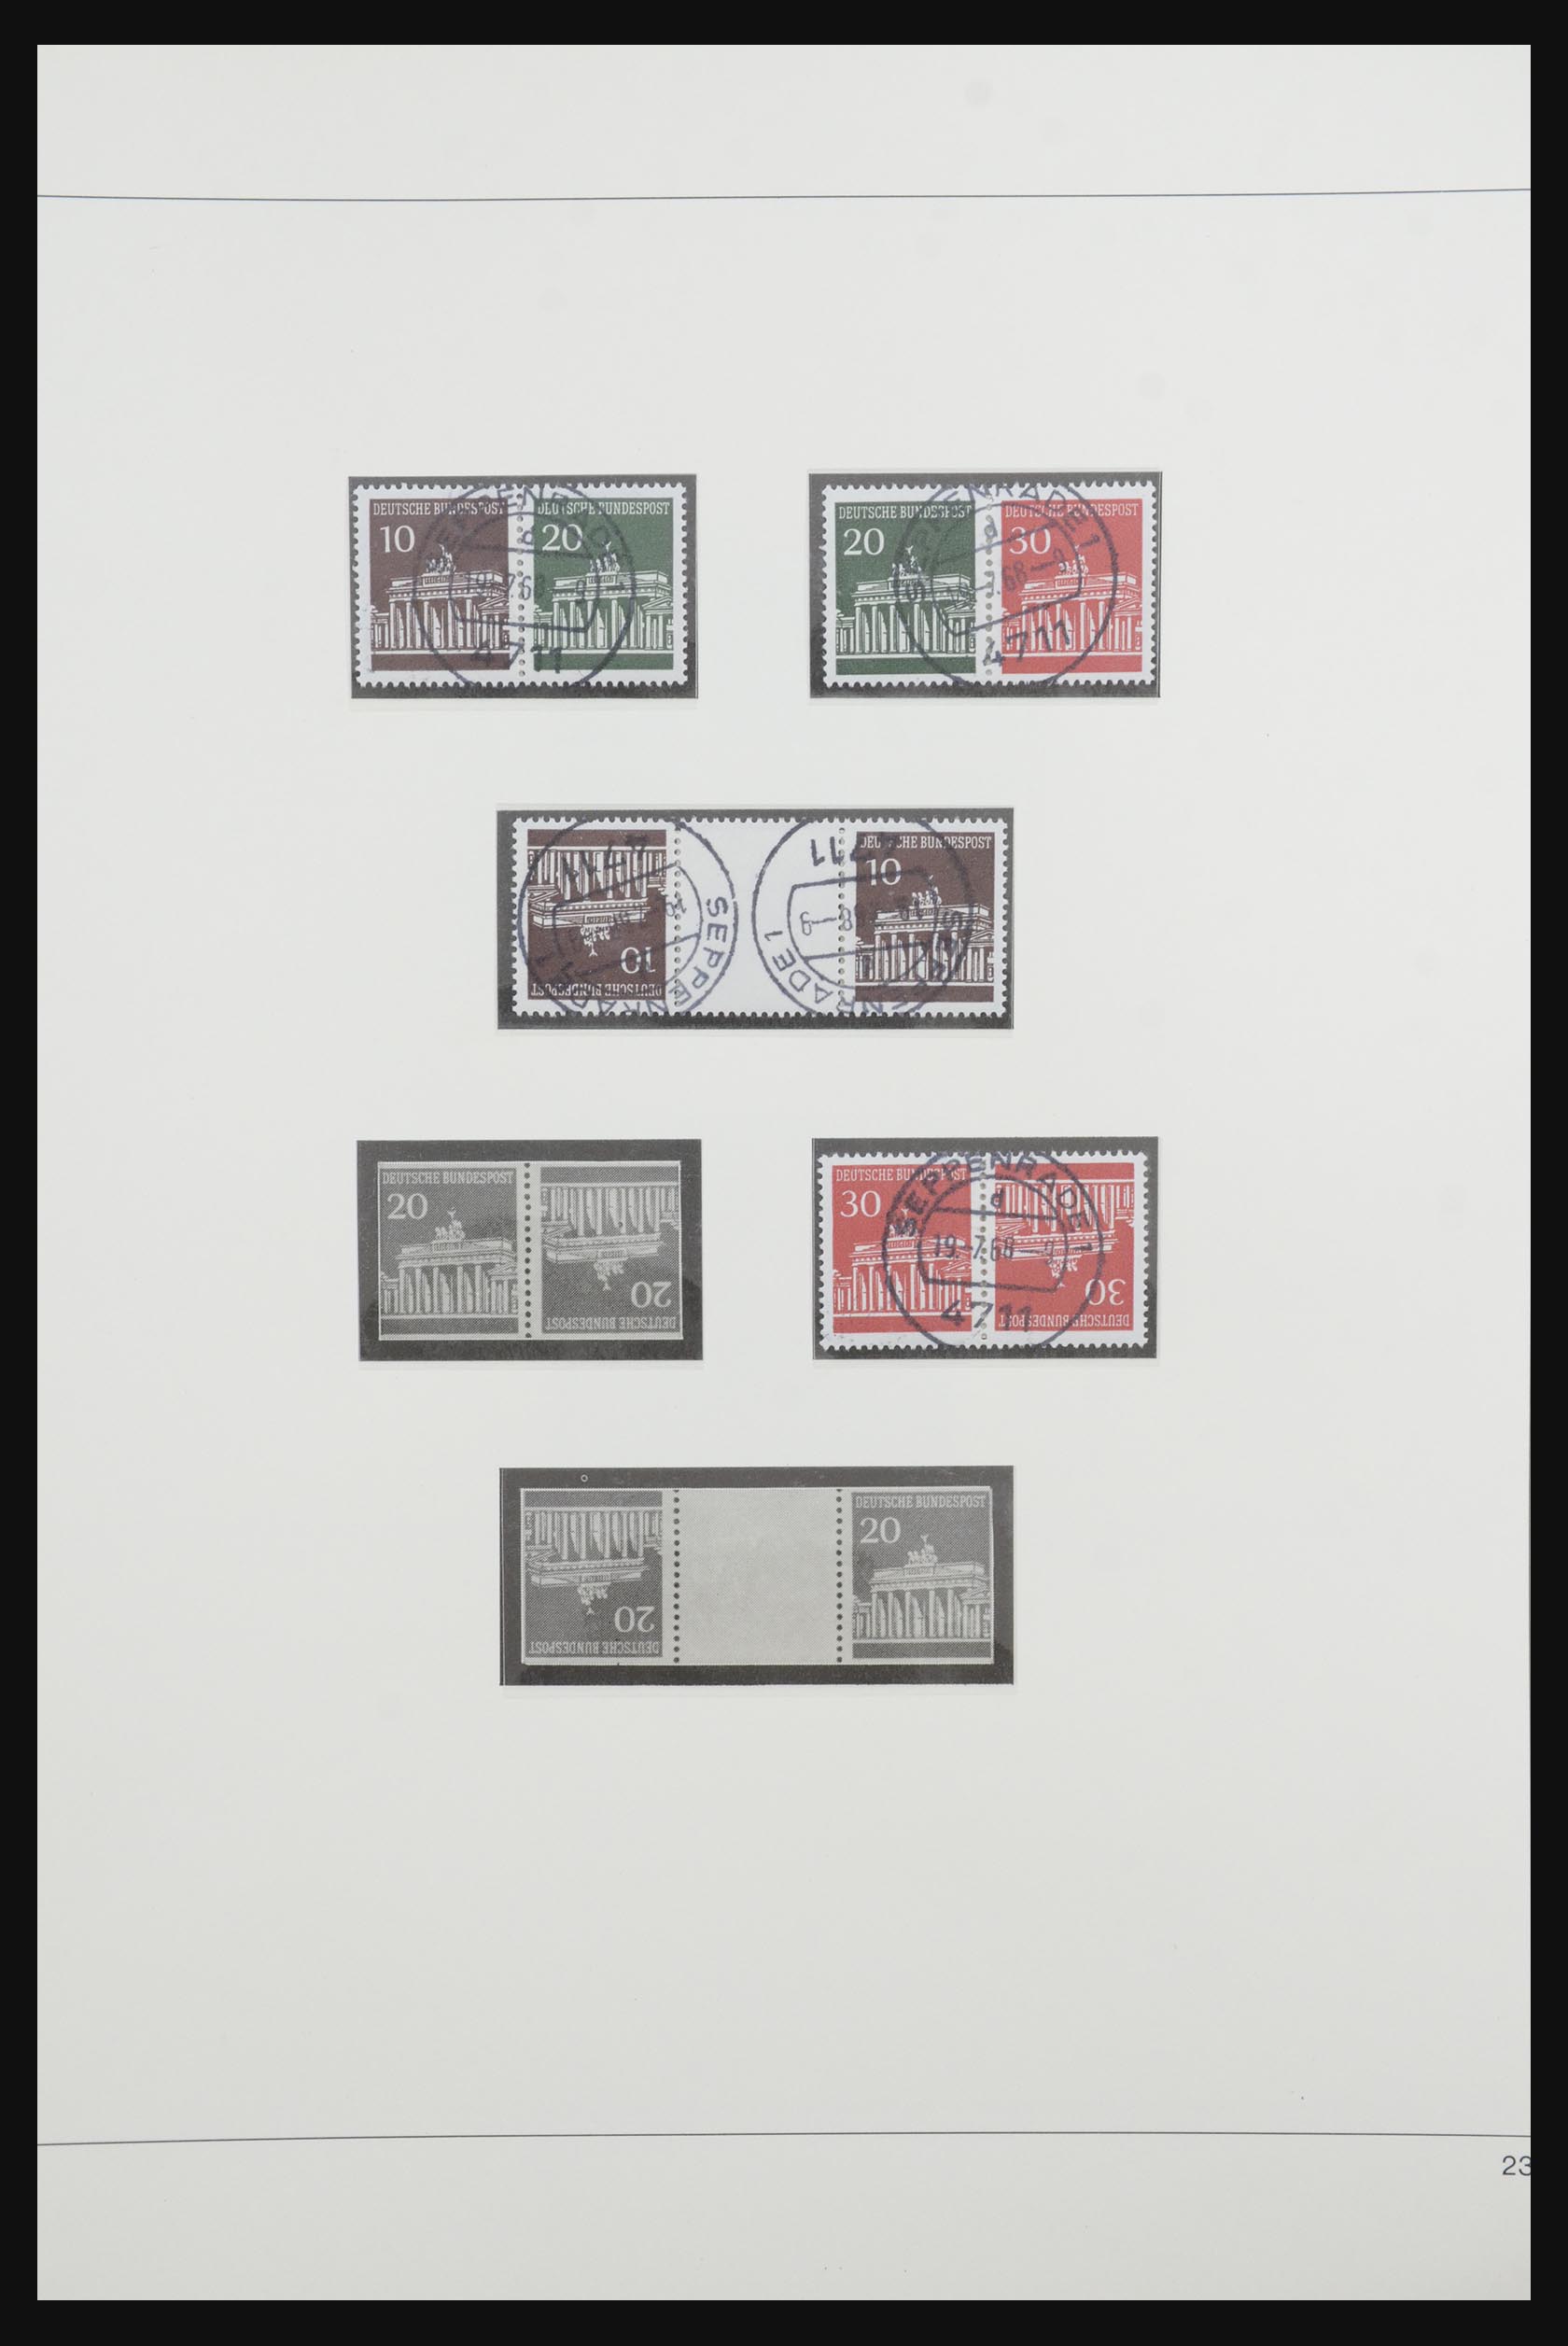 31842 032 - 31842 Bundespost combinations 1951-2003.